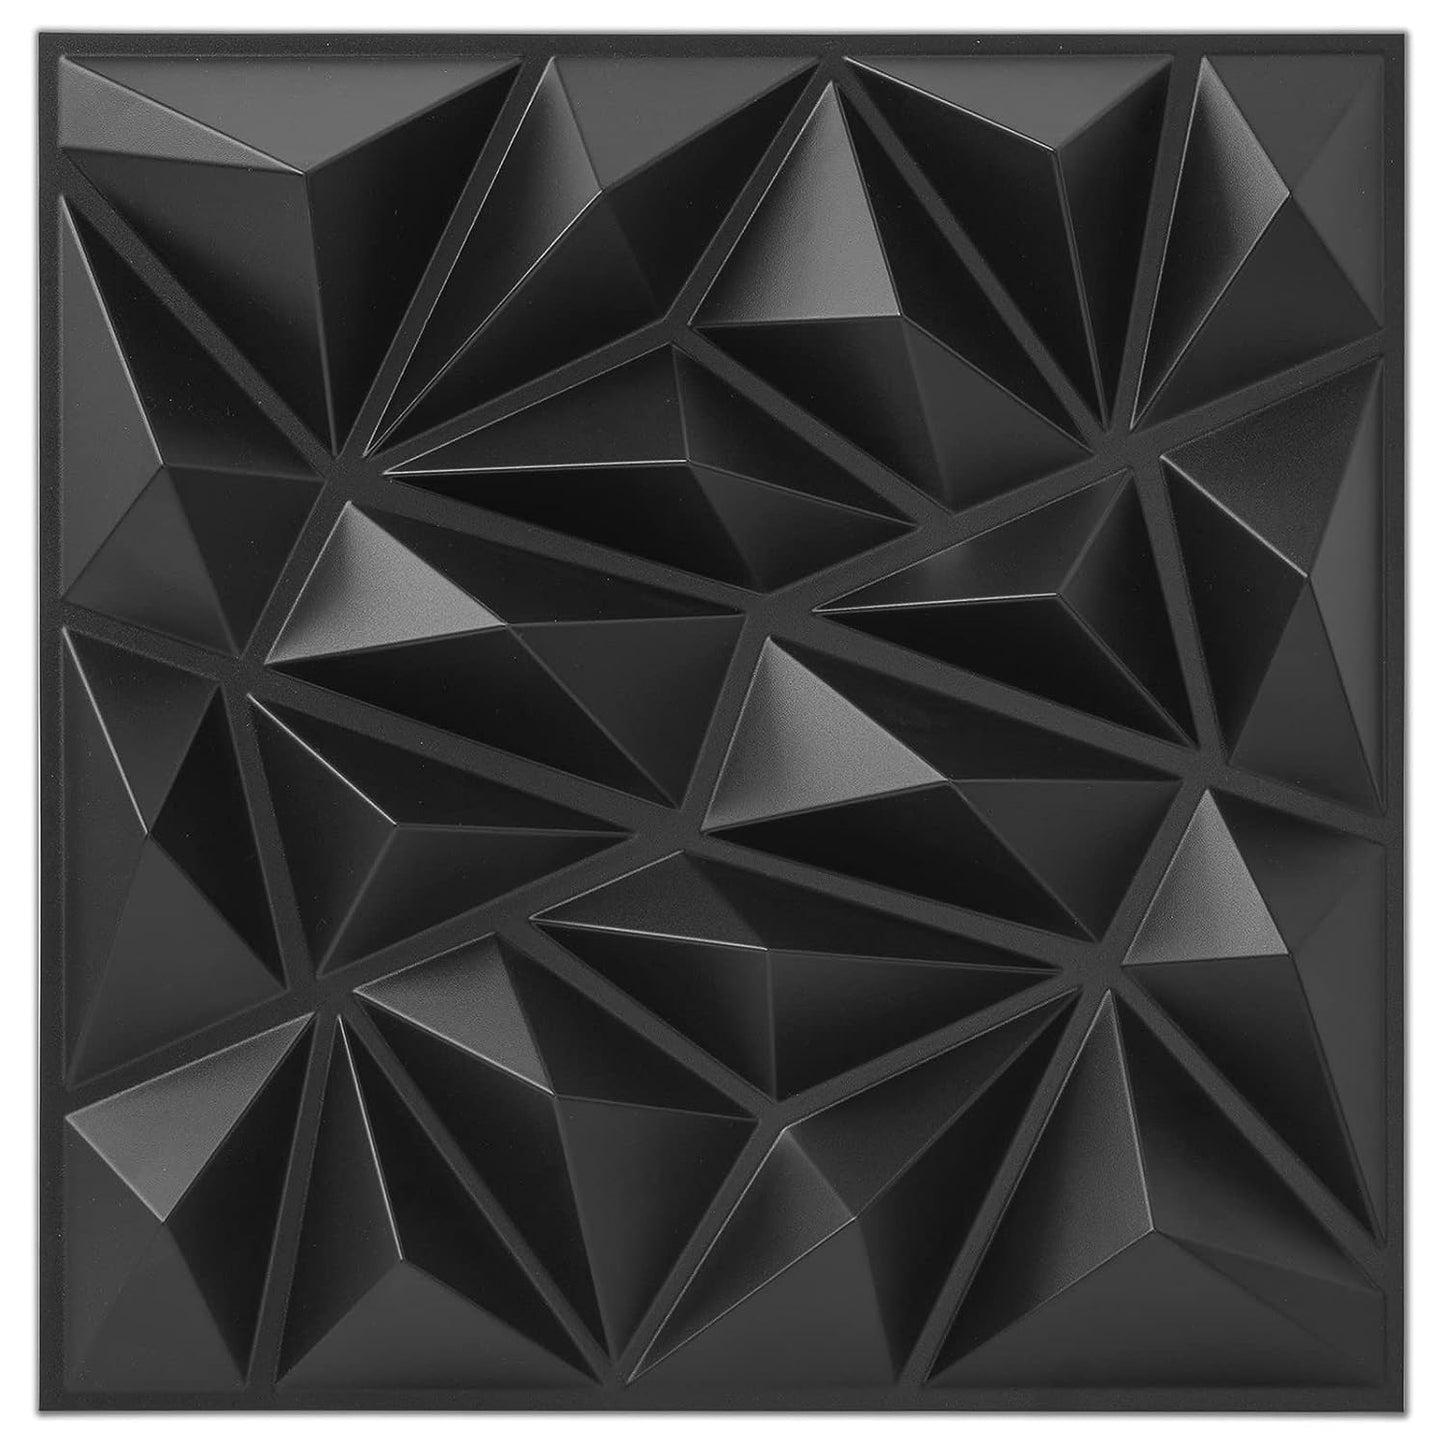 Art3dwallpanels Paquete de 33 paneles de pared 3D para decoración de paredes interiores, paneles de pared texturizados de PVC, papel tapiz 3D, azulejos de pared modernos, negro